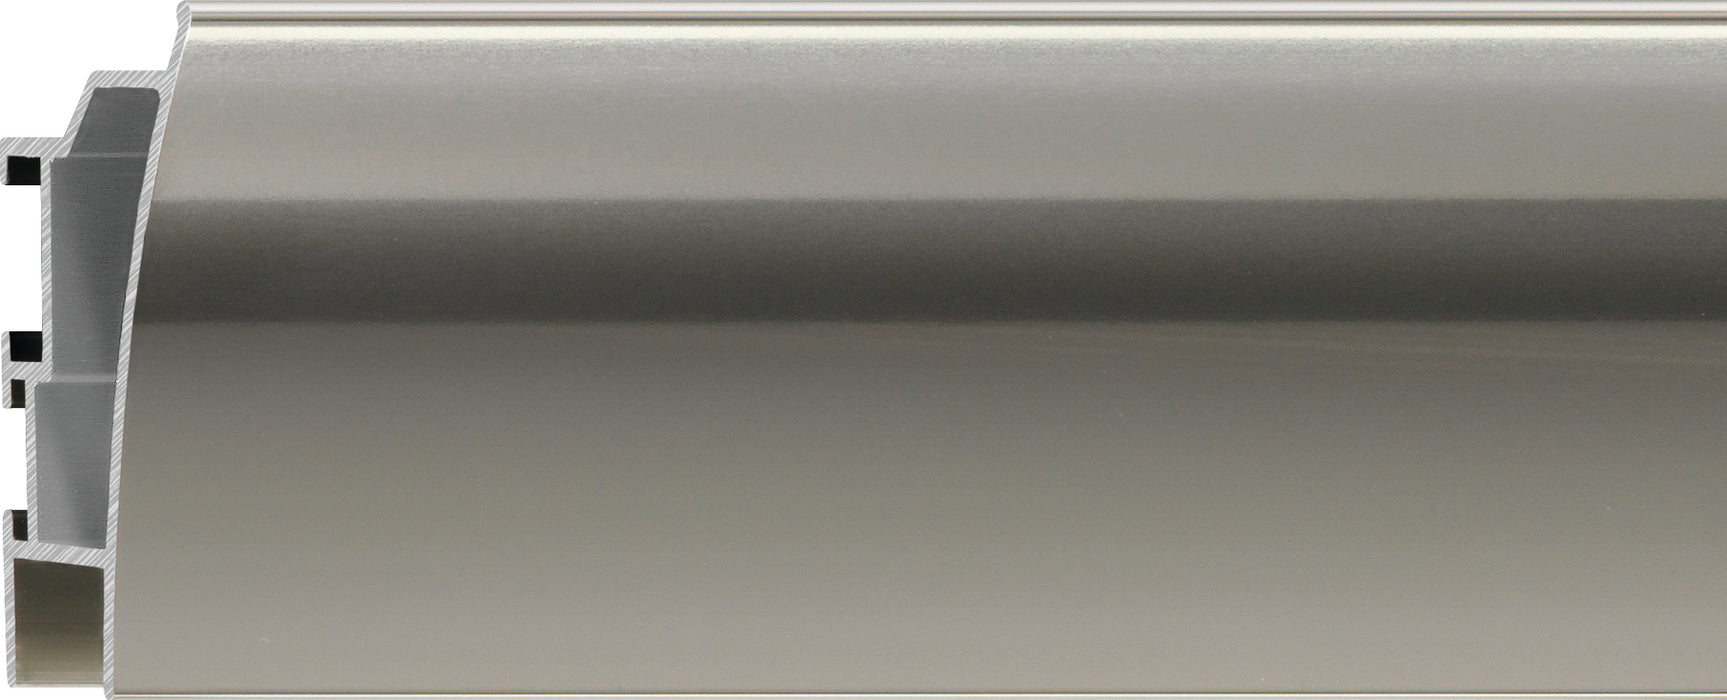 Nielsen Aluminium Metal Frame Profile 220 P220 - 2220034 Glossy German Silver